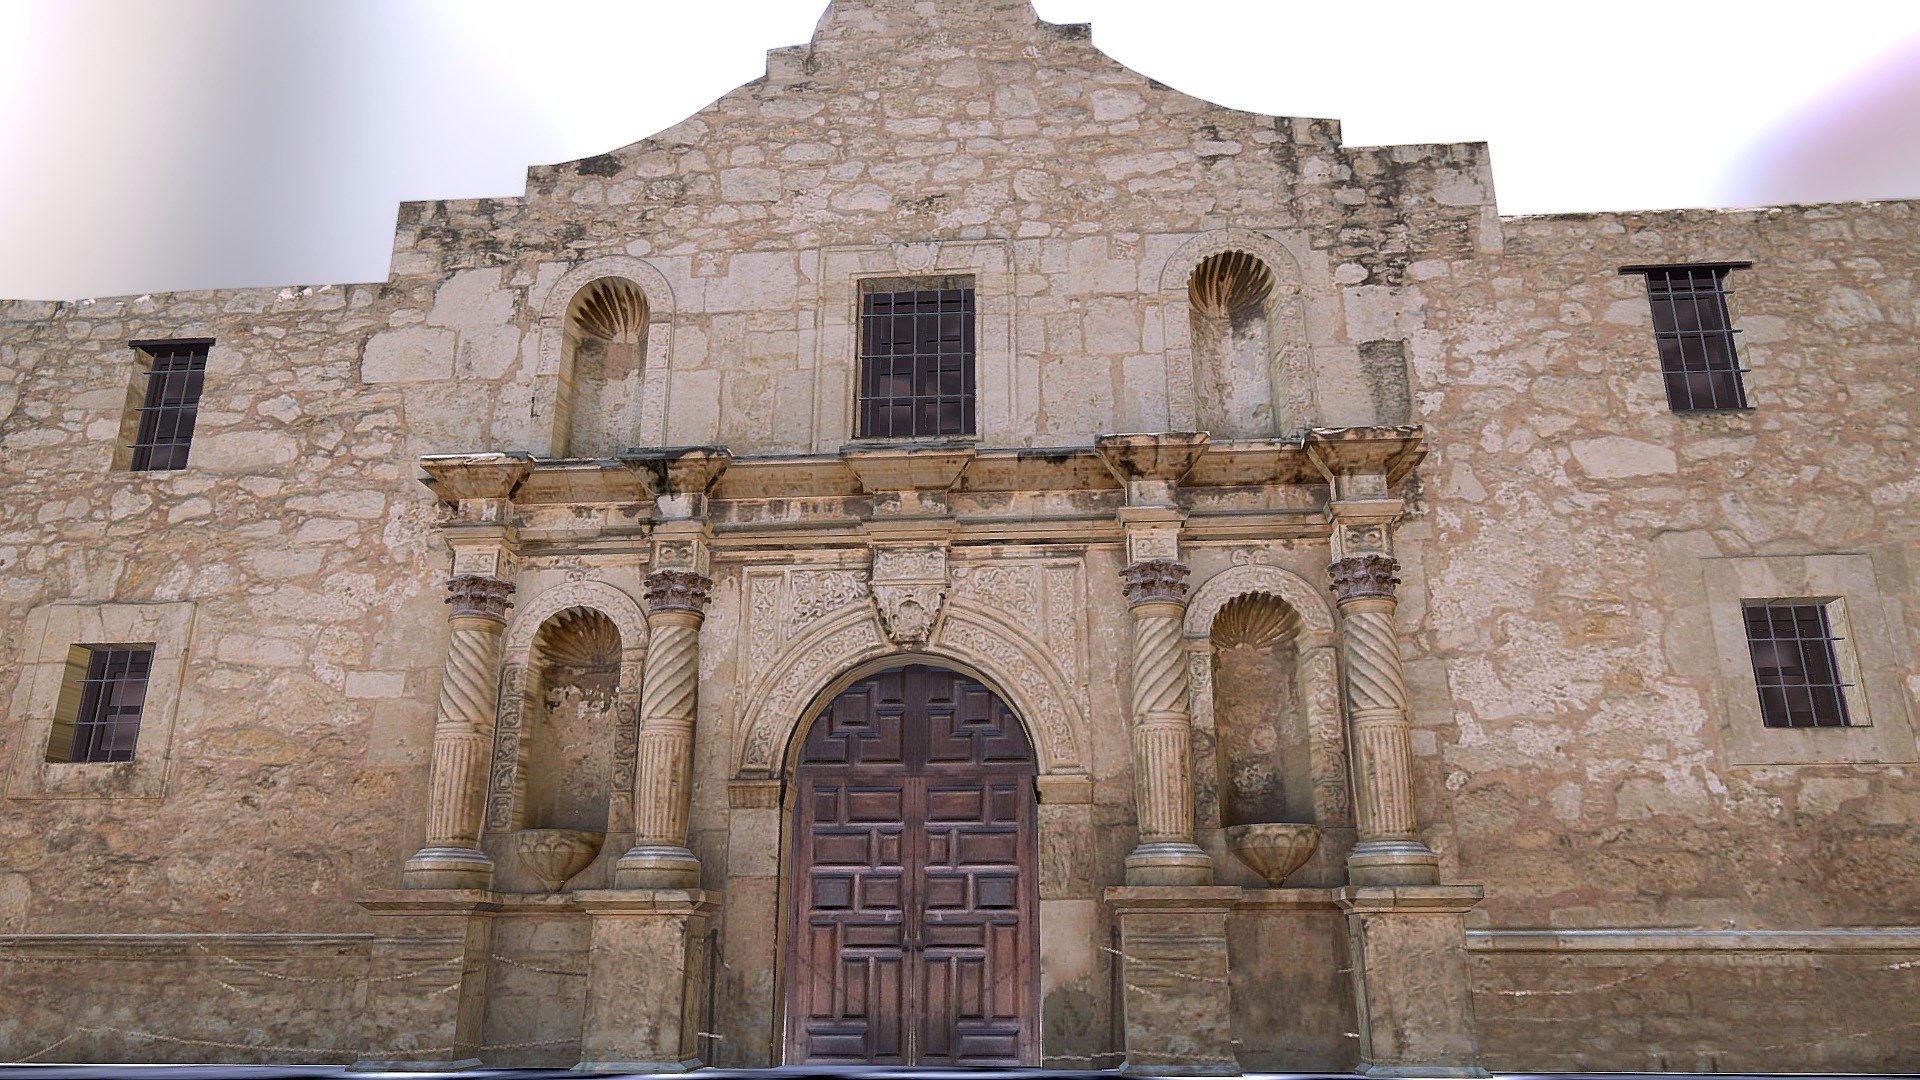 El Álamo  es el nombre de una antigua construcción misionaria, en la ciudad de San Antonio, Texas, Estados Unidos de América. Fue fundada por Fray Antonio de Olivares y los indios Papayas, y junto con la Presidio de San Antonio de Béjar y la Acequia Madre de Valero es el origen de la actual ciudad de San Antonio, Texas.Esta fortaleza consistía en una iglesia cercada por otras estructuras, construidas por los españoles en el siglo XVIII.  En 1793, la misión fue secularizada y muy pronto abandonada. Diez años después se convirtió en una fortaleza de un grupo del Ejército Mexicano, la Segunda Compañía Móvil de San Carlos de Parras, la cual probablemente fue quien dio a la misión el nombre &ldquo;El Álamo - El Alamo - Buy Royalty Free 3D model by Antonio Rodriguez (@tubero44) 3d model